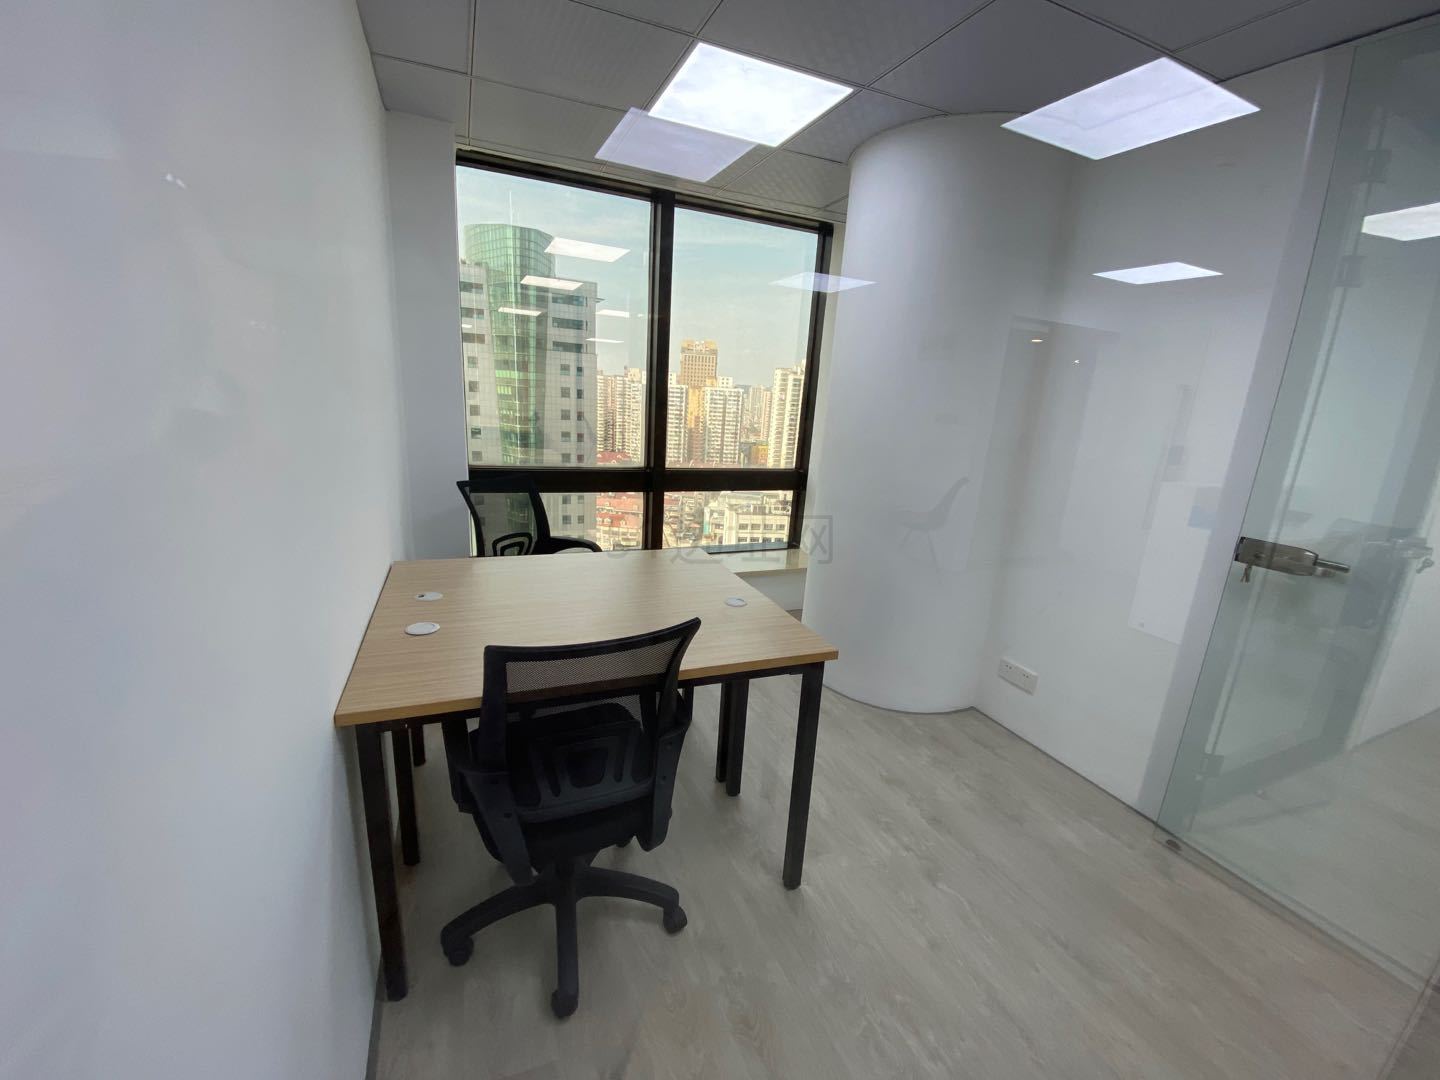 环球世界大厦-静安寺178方特价独立精装全配办公室